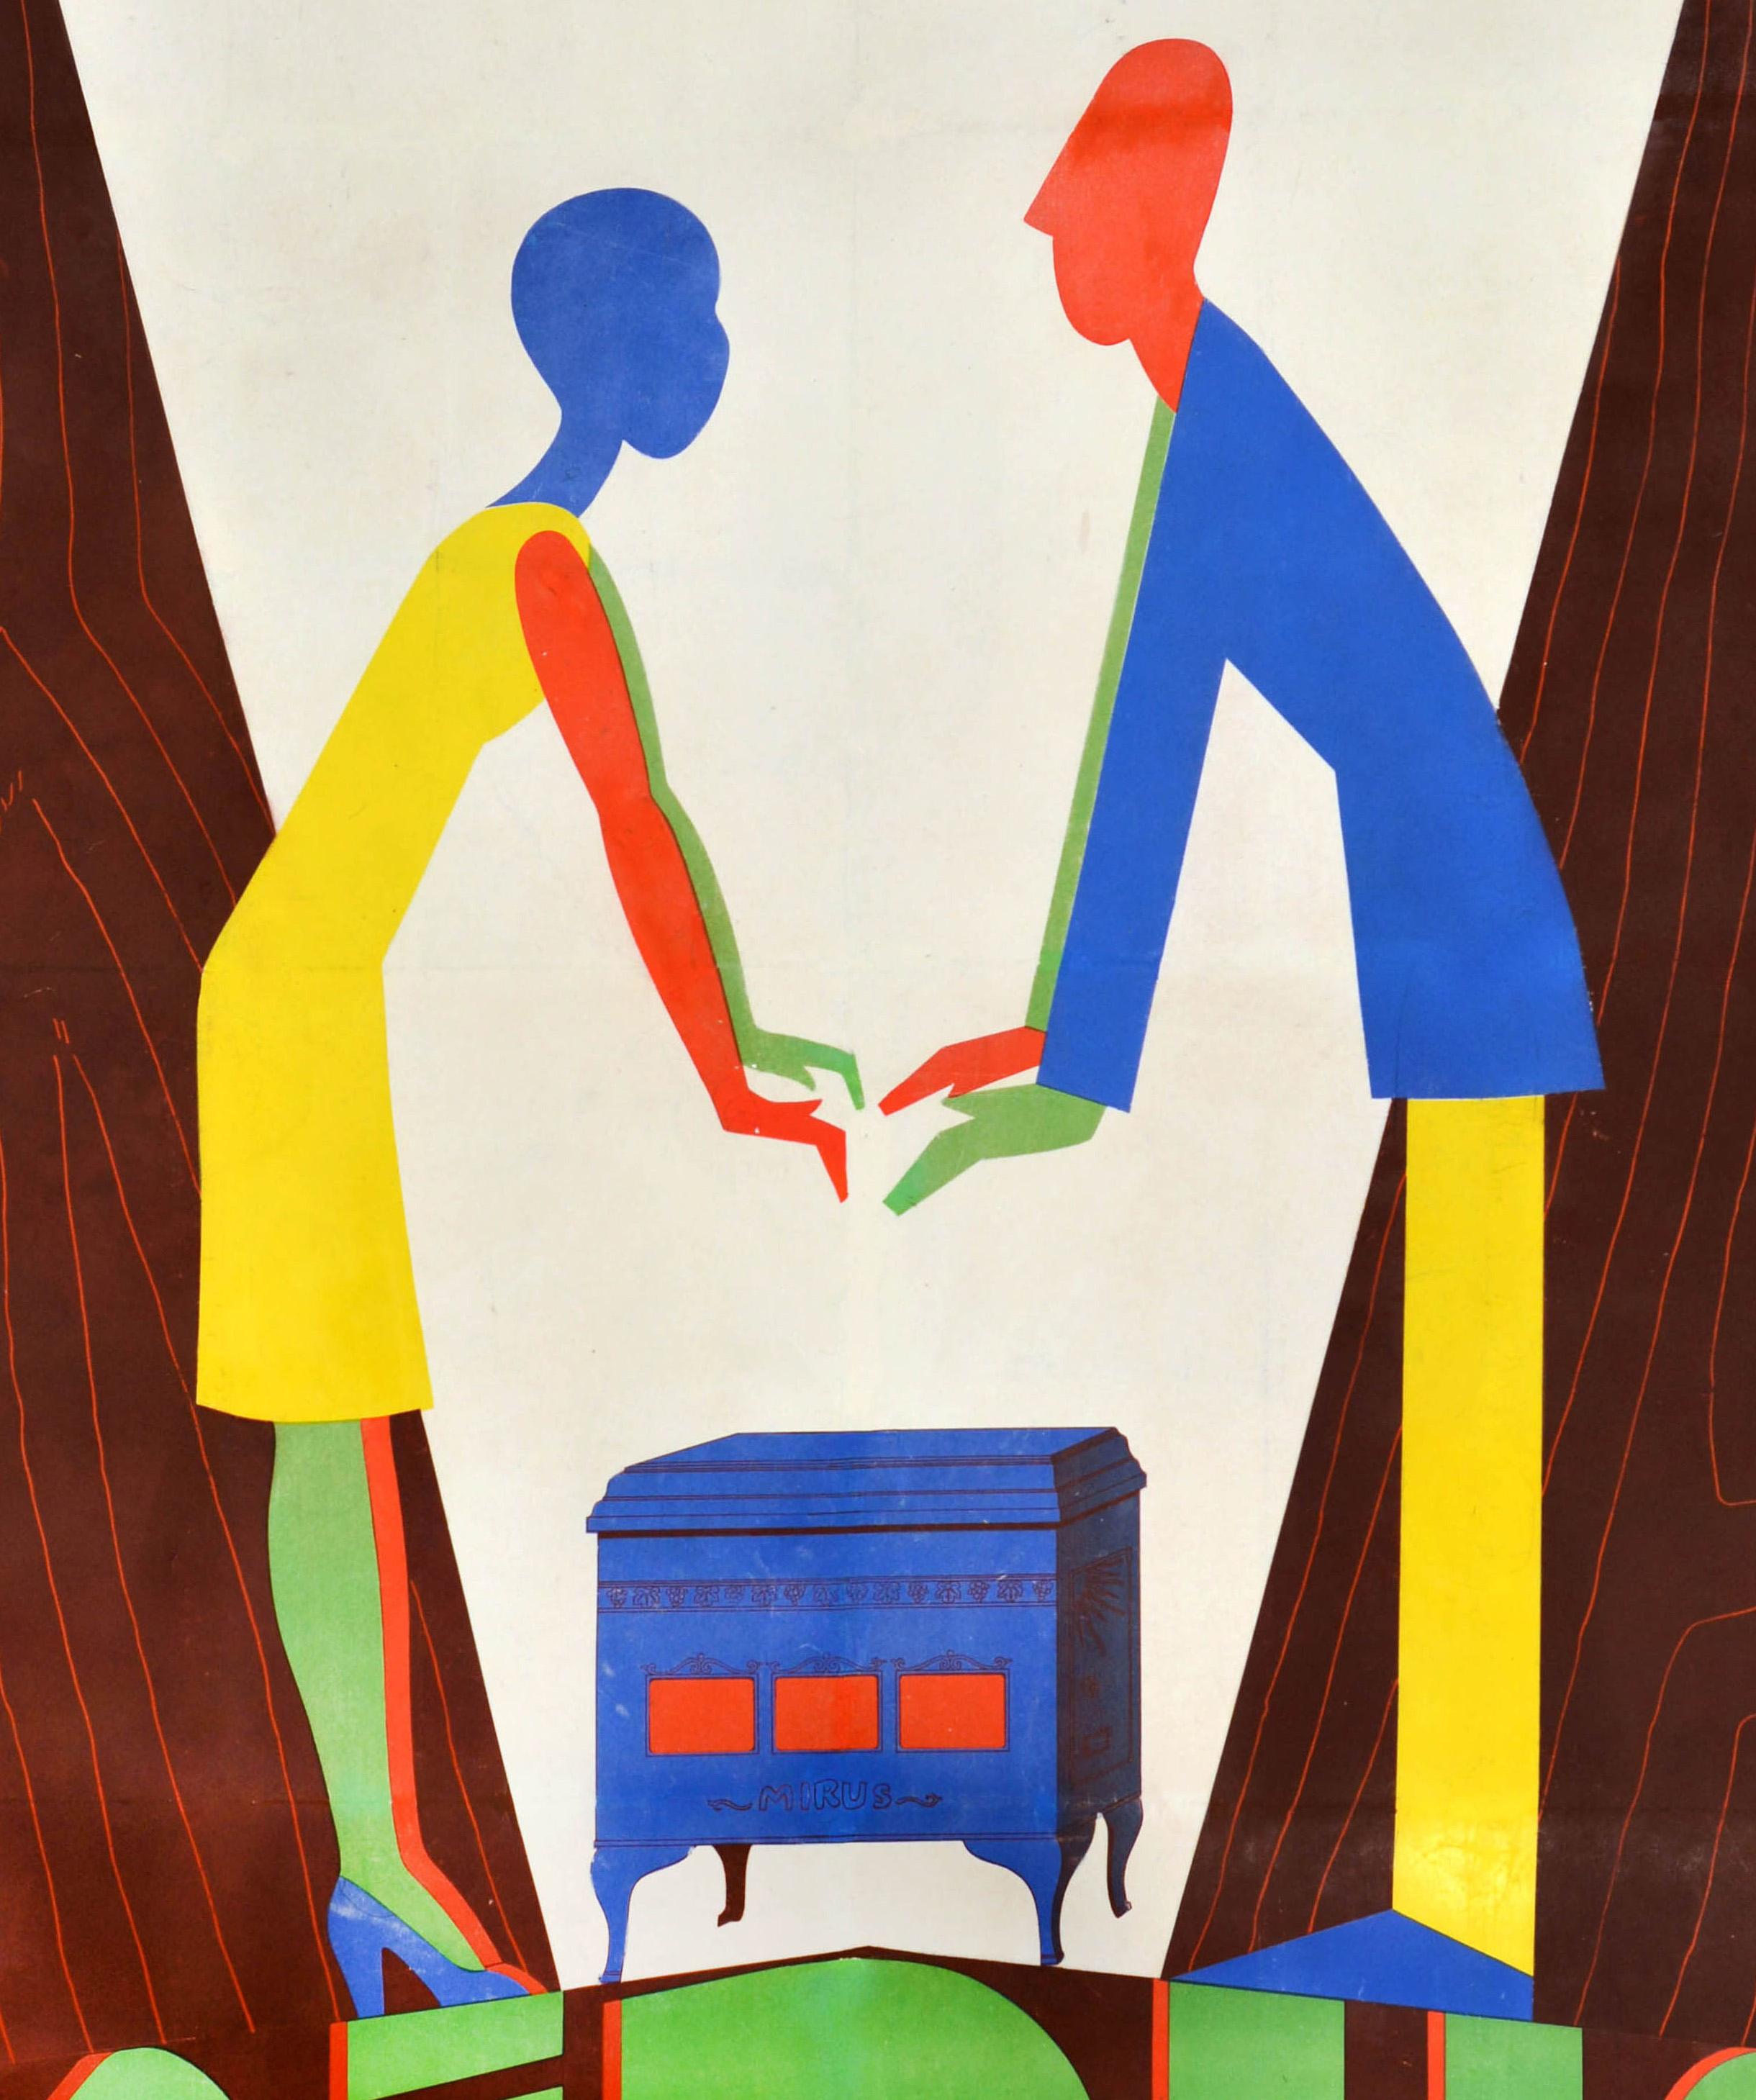 Originales antikes Werbeplakat für Mirus poele a bois / Holzheizungen mit einer farbenfrohen, stilisierten Illustration einer Dame und eines Mannes, die sich die Hände am Ofen wärmen, auf einem V-förmigen Hintergrund mit weißem und hölzernem Muster,